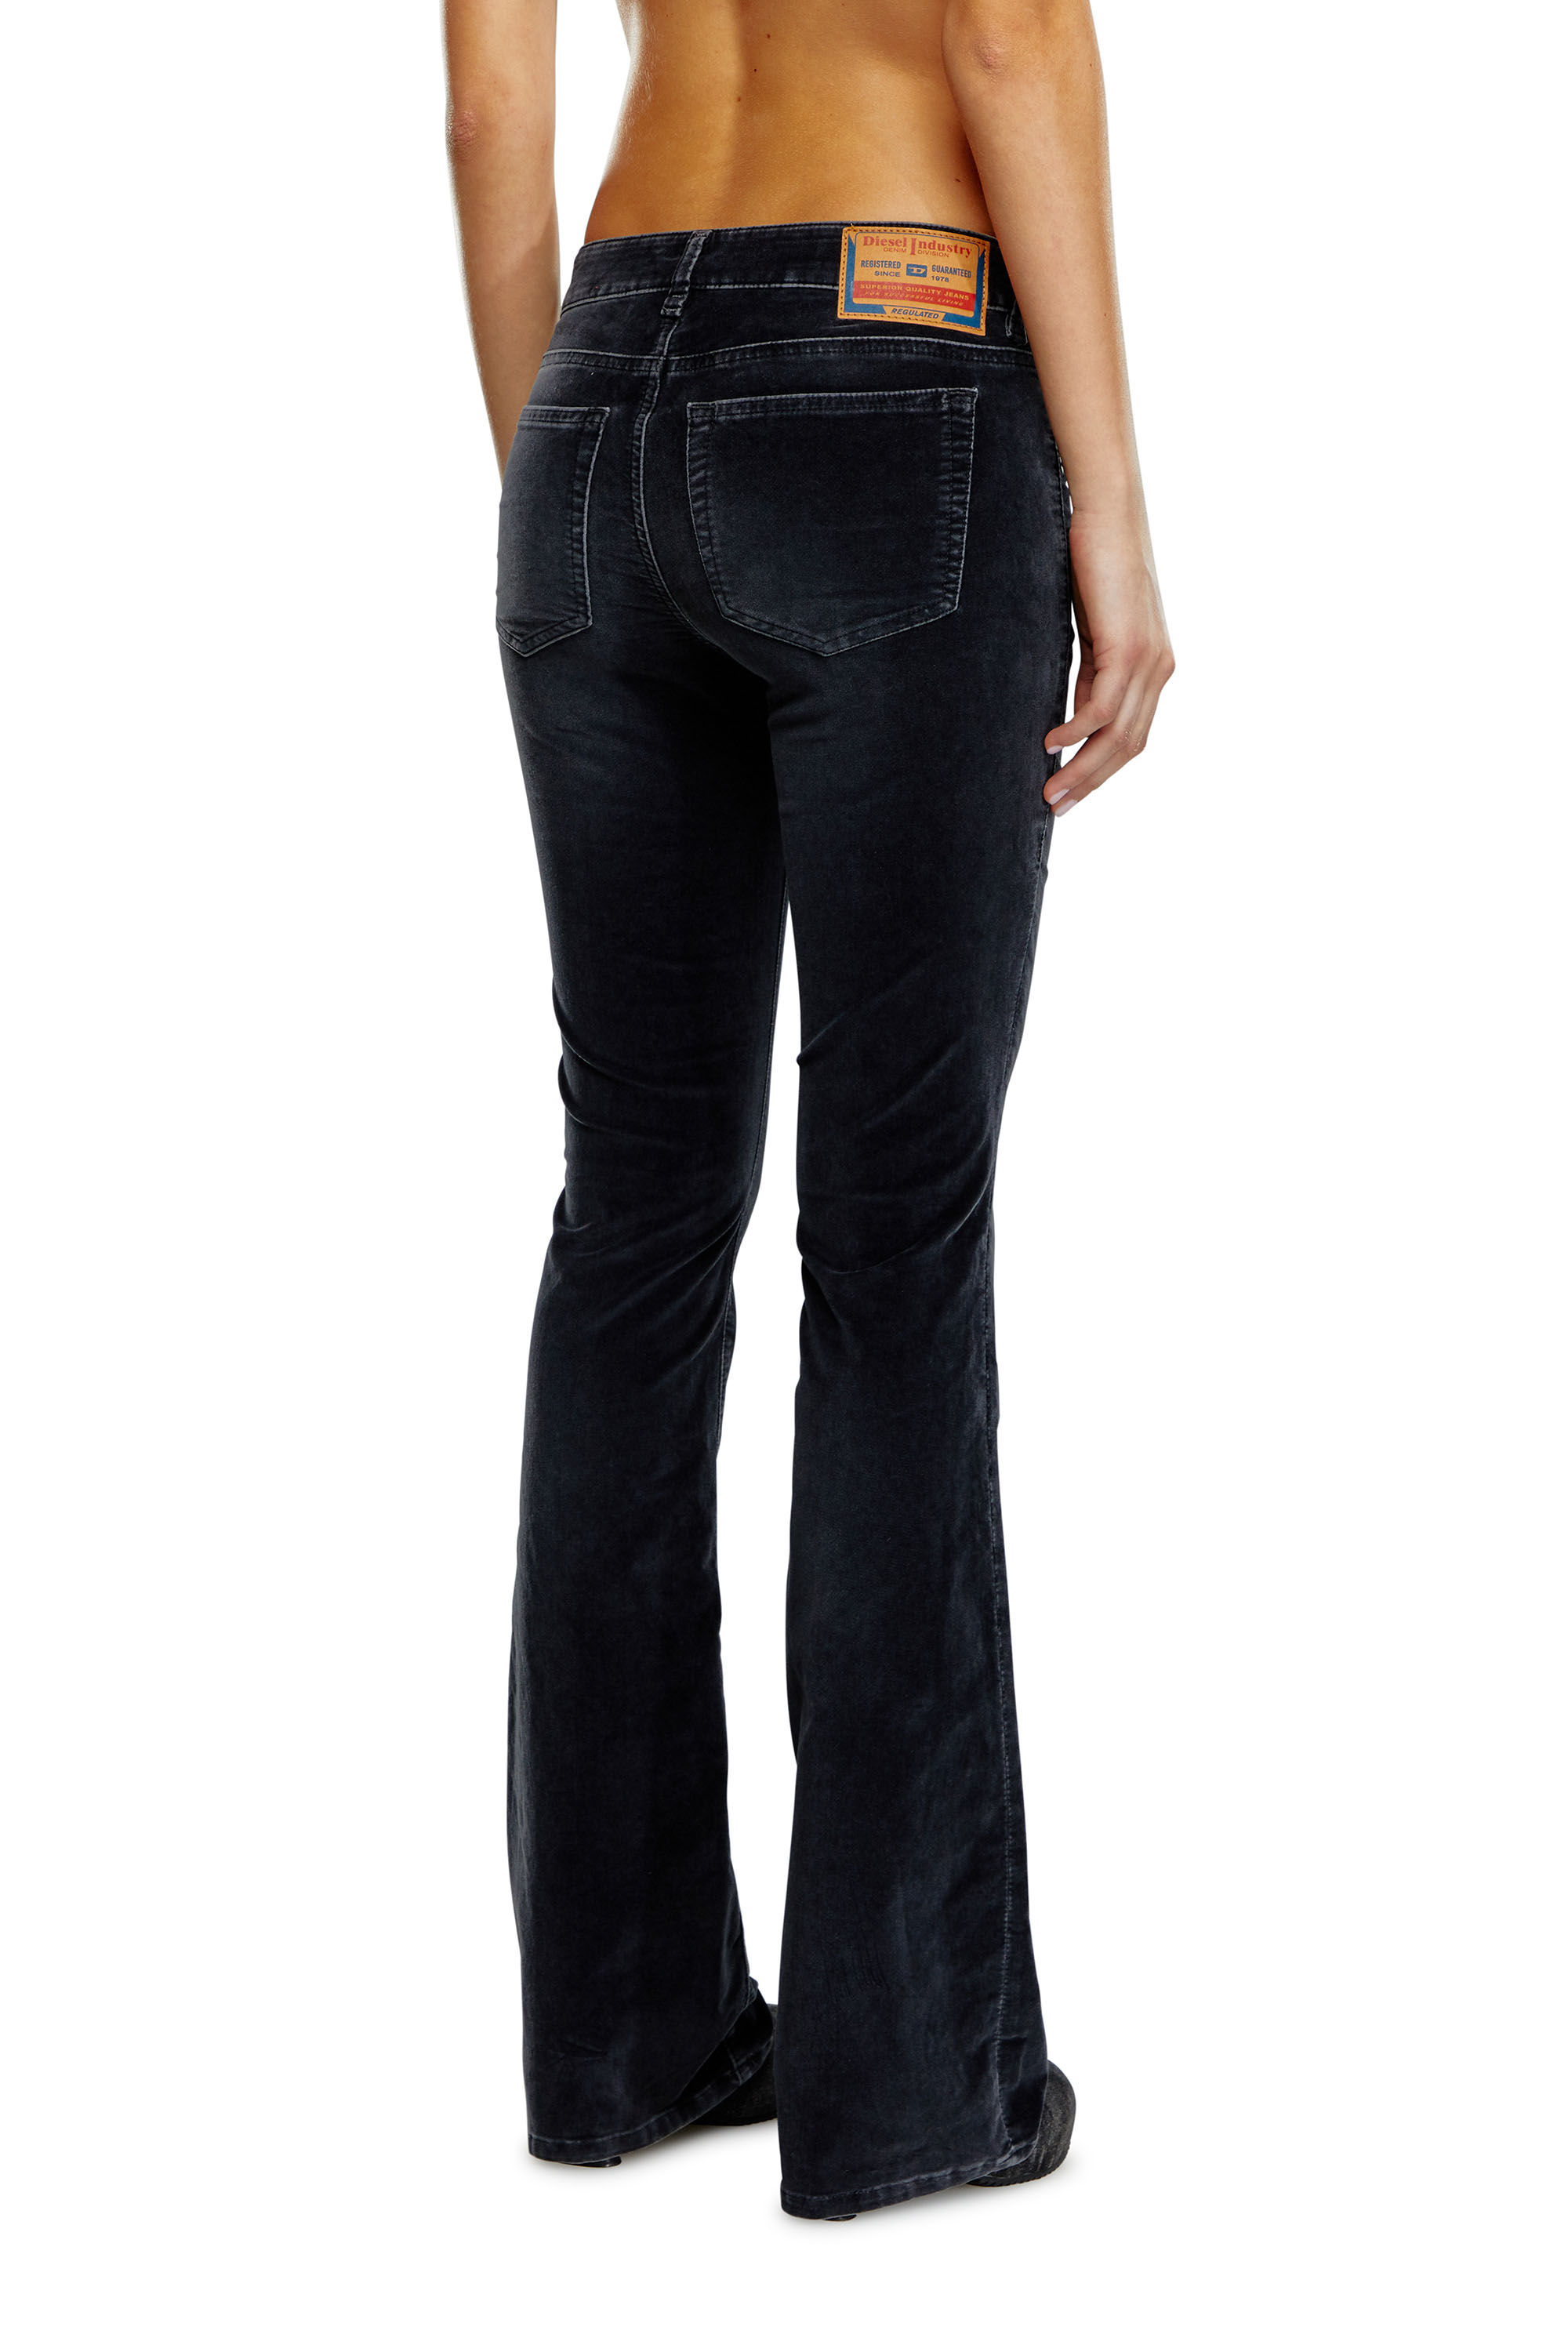 Diesel® 1969 D-Ebbey | Women's bootcut Jeans: low rise